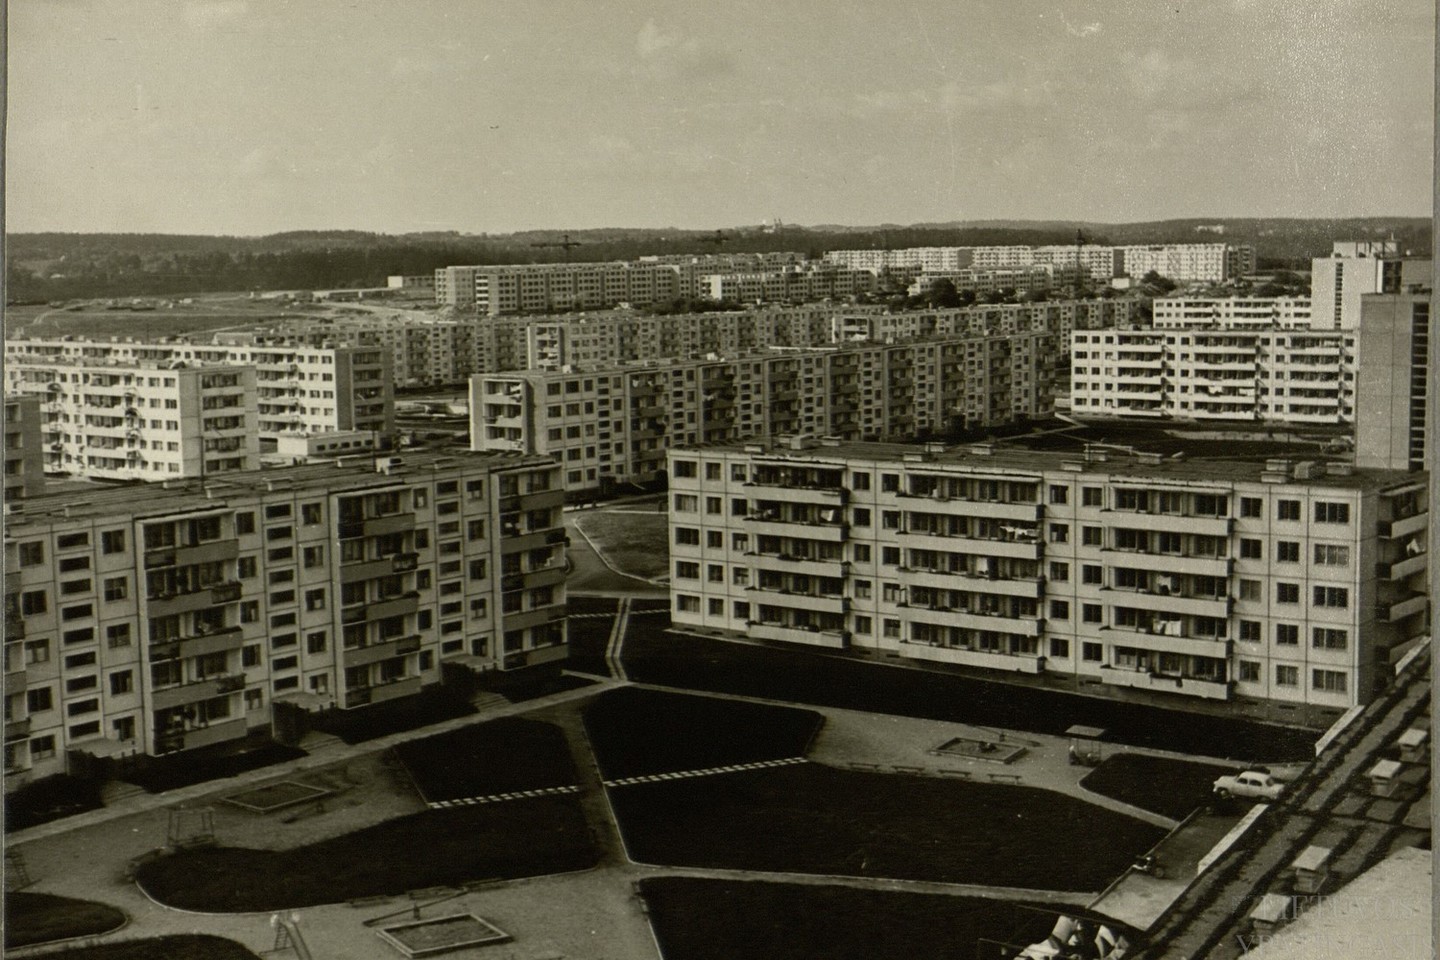 Gyvenamieji namai Vilniuje, Žirmūnuose. 1969 m.<br>Lietuvos ypatingojo archyvo nuotr.